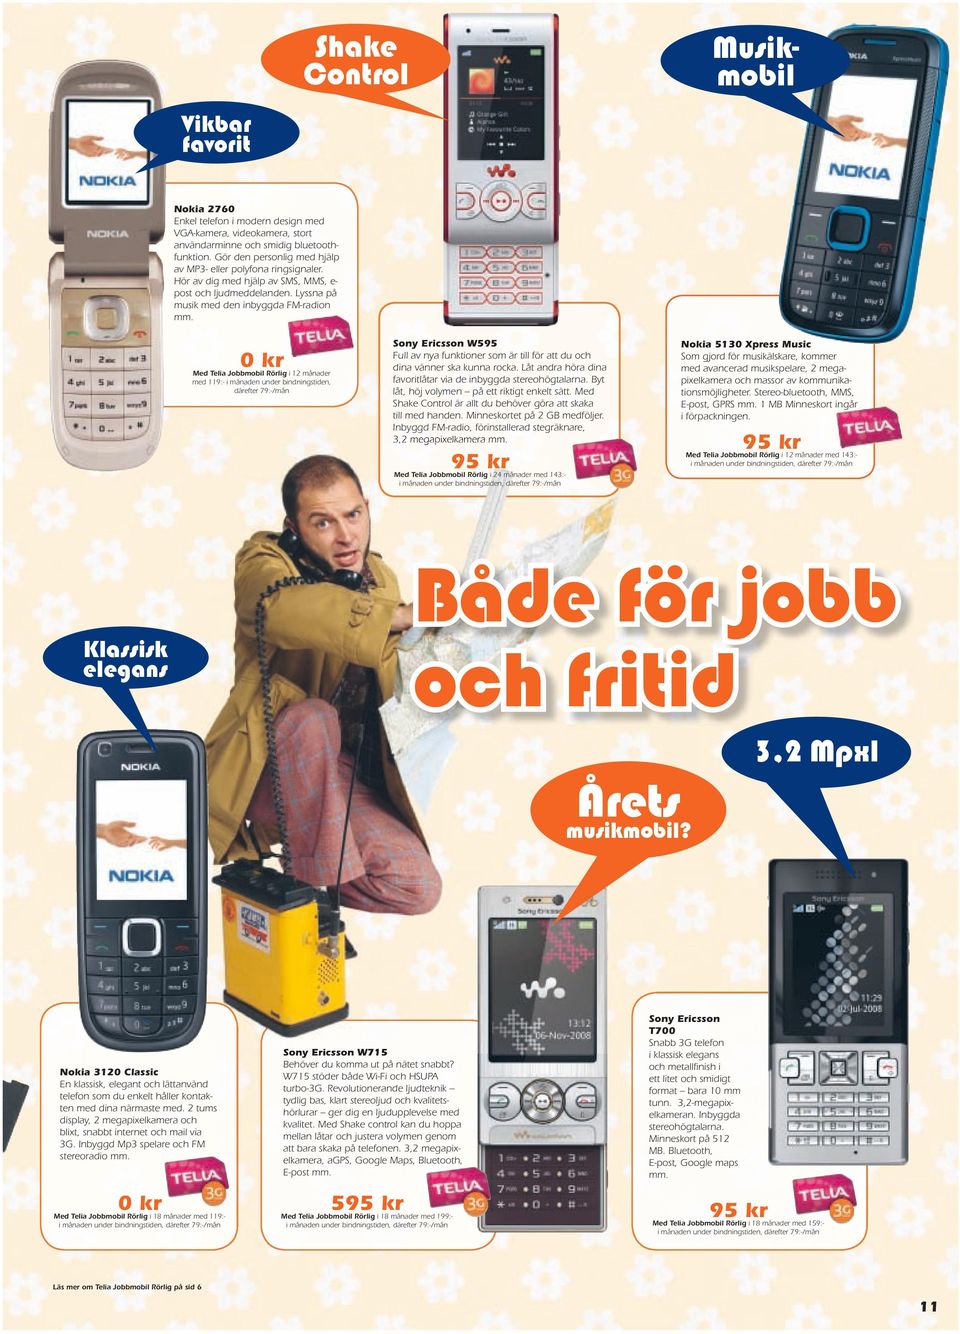 0 kr Med Telia Jobbmobil Rörlig i 12 månader med 119:- i månaden under bindningstiden, Sony Ericsson W595 Full av nya funktioner som är till för att du och dina vänner ska kunna rocka.